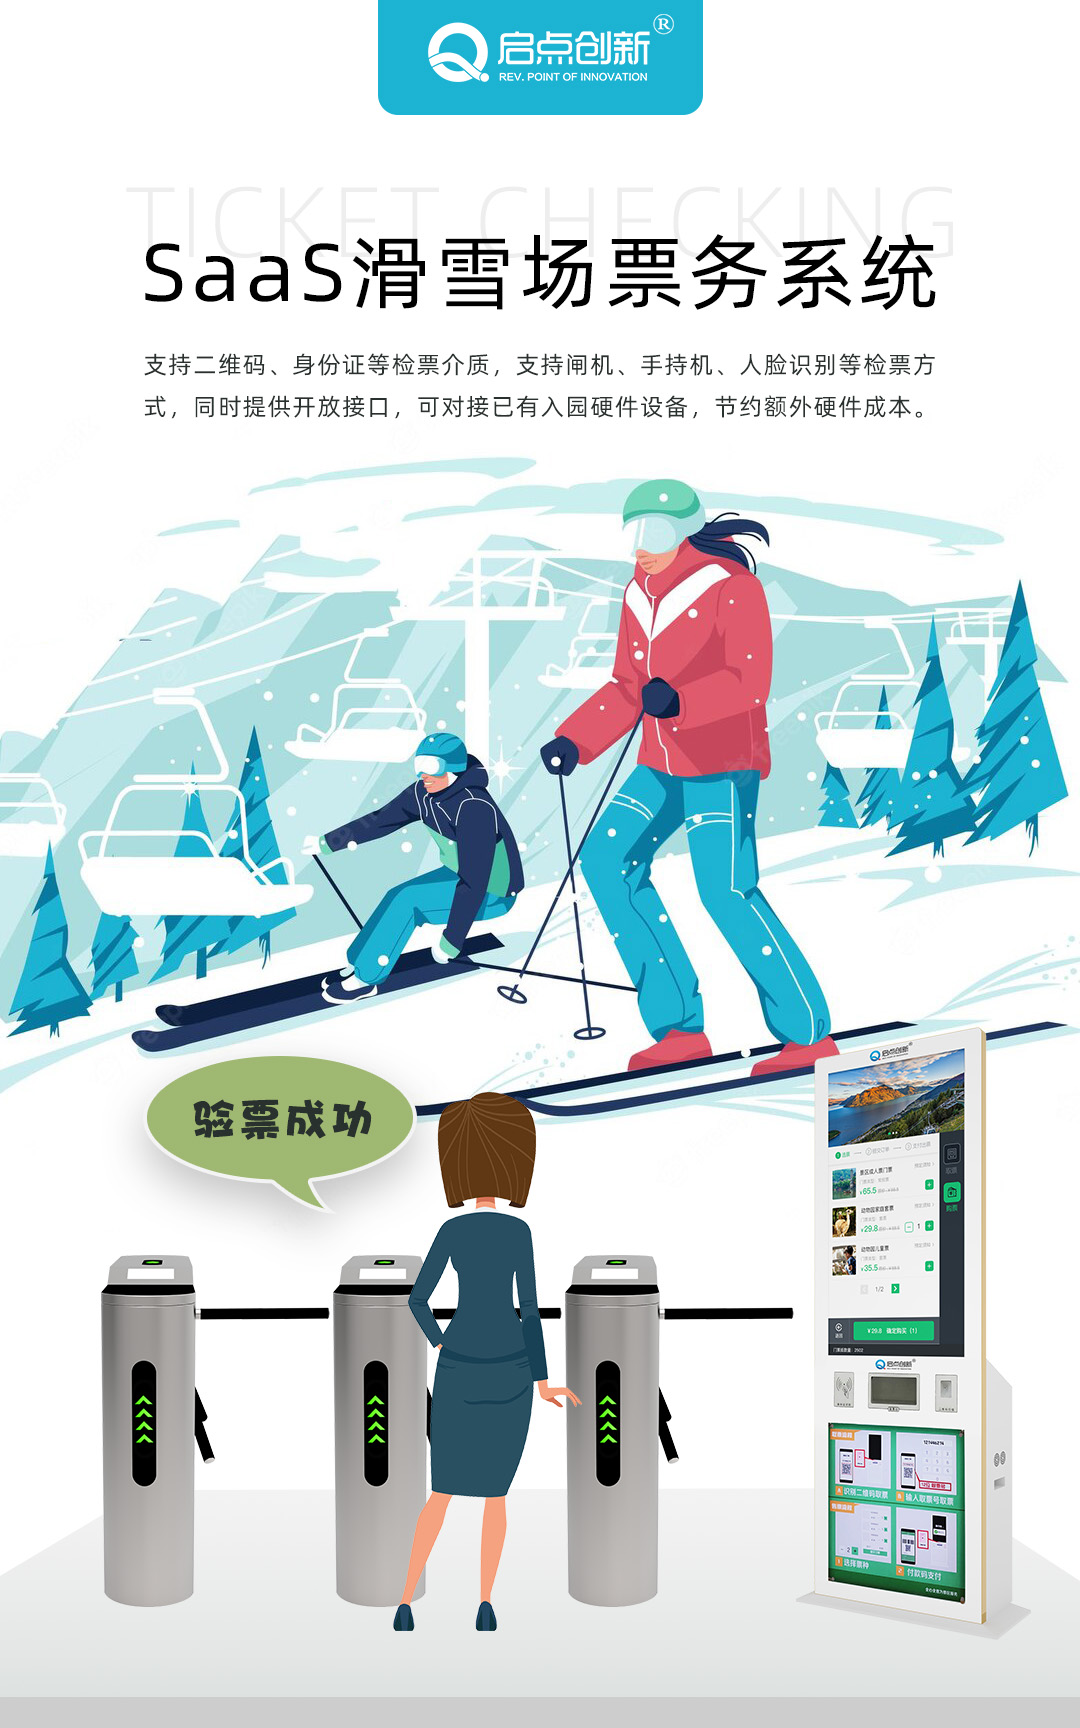 滑雪比赛计时 SaaS滑雪系统 滑雪计时系统 滑雪计时设备